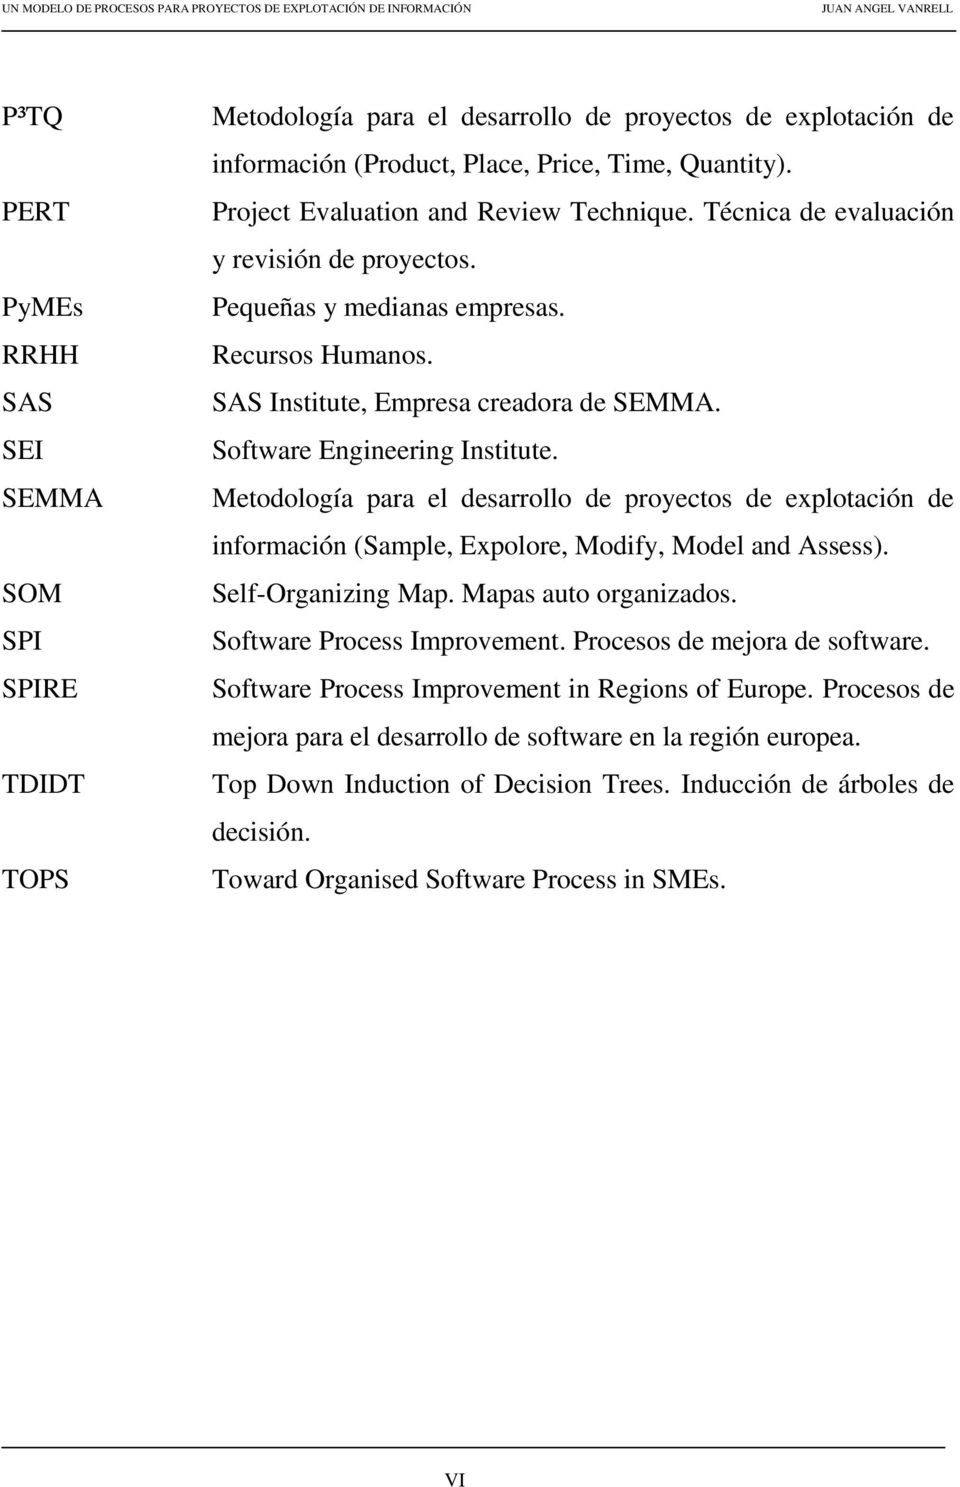 Software Engineering Institute. Metodología para el desarrollo de proyectos de explotación de información (Sample, Expolore, Modify, Model and Assess). Self-Organizing Map. Mapas auto organizados.